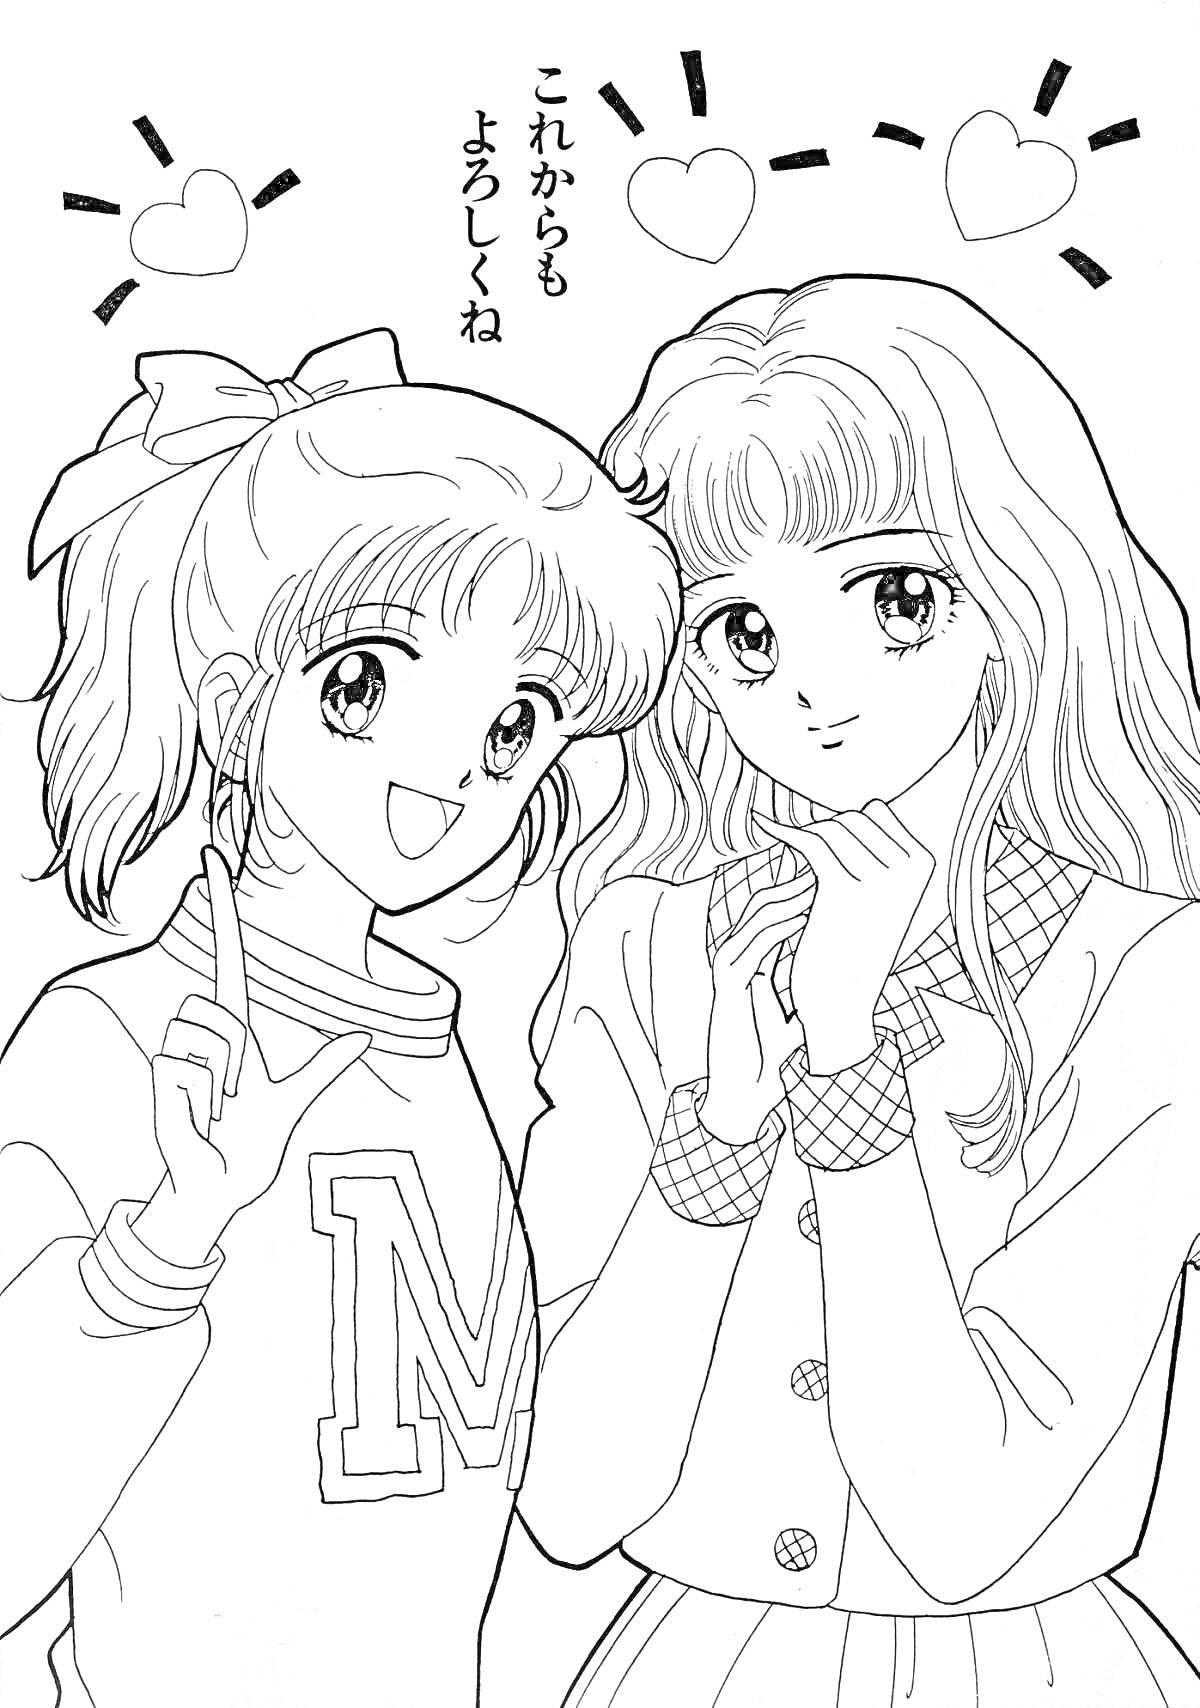 Раскраска Две девочки в школьной форме с сердечками и японскими иероглифами